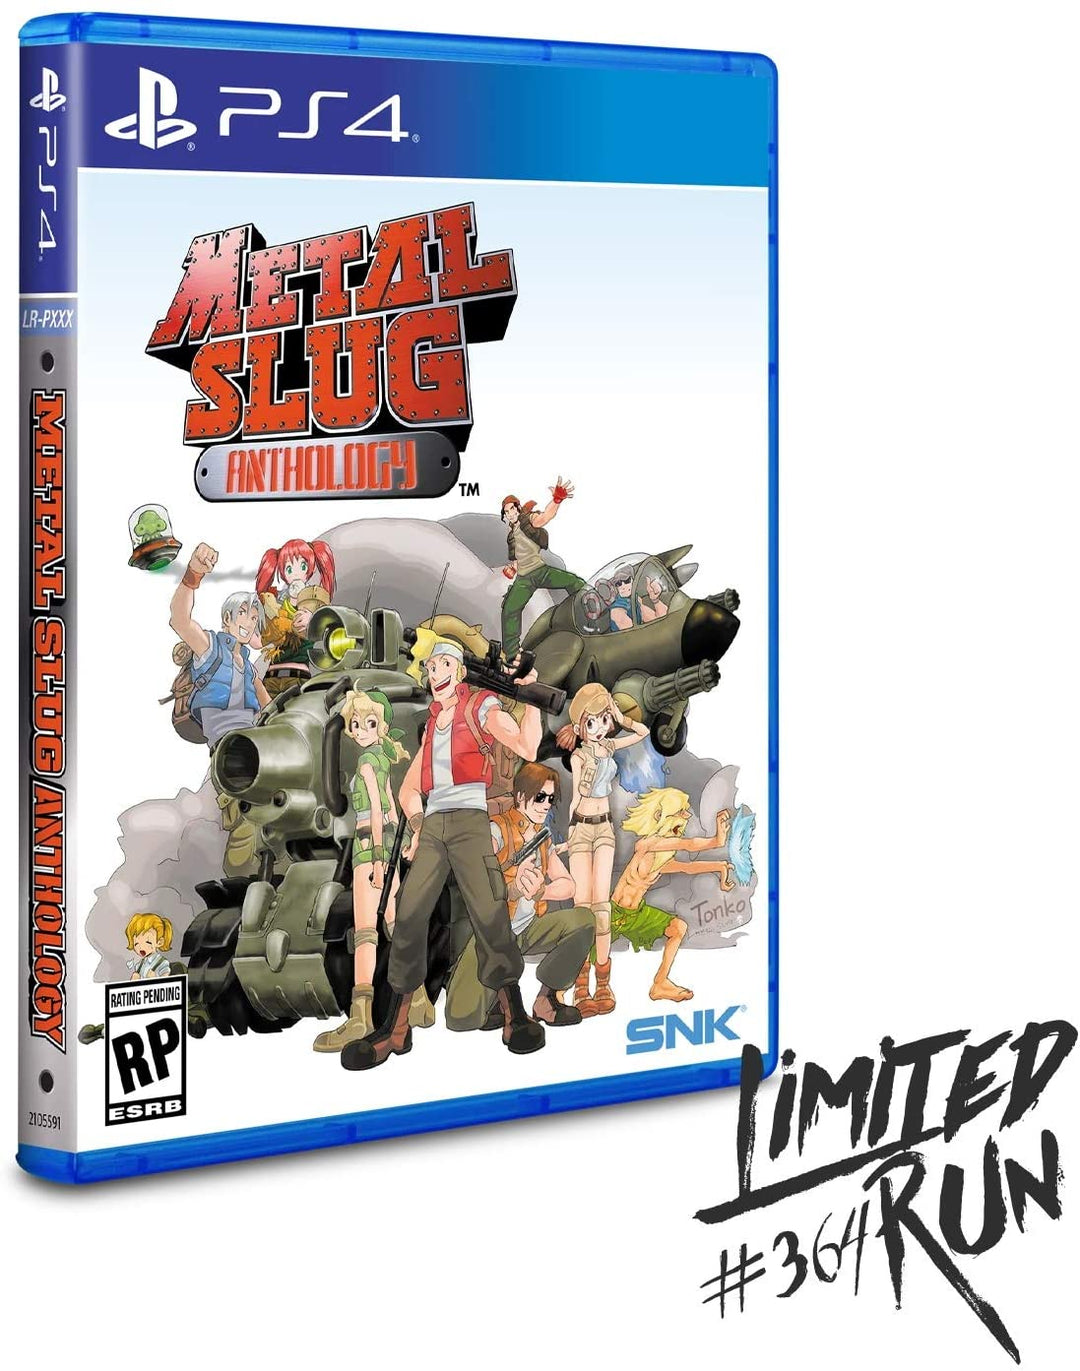 Metal Slug Anthology for PlayStation 4 (Limited Run Games #364)